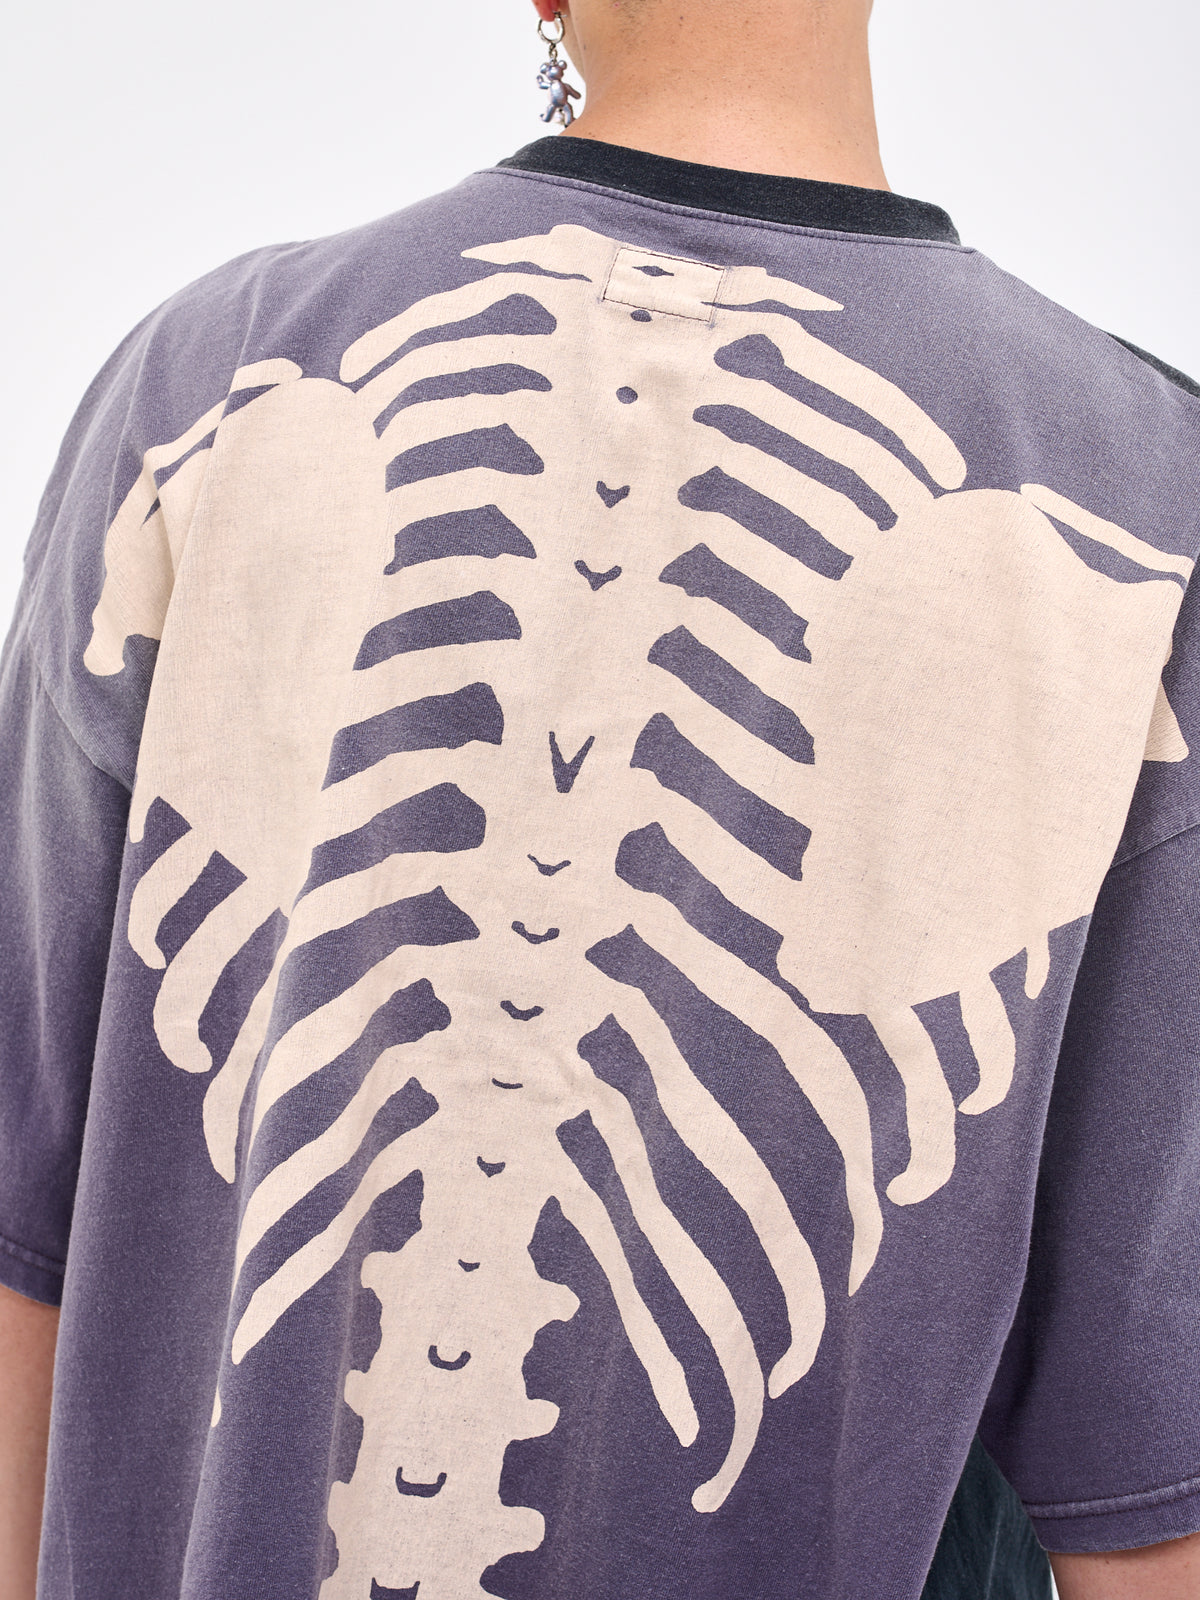 KAPITAL Skeleton T-Shirt | H. Lorenzo - detail 2